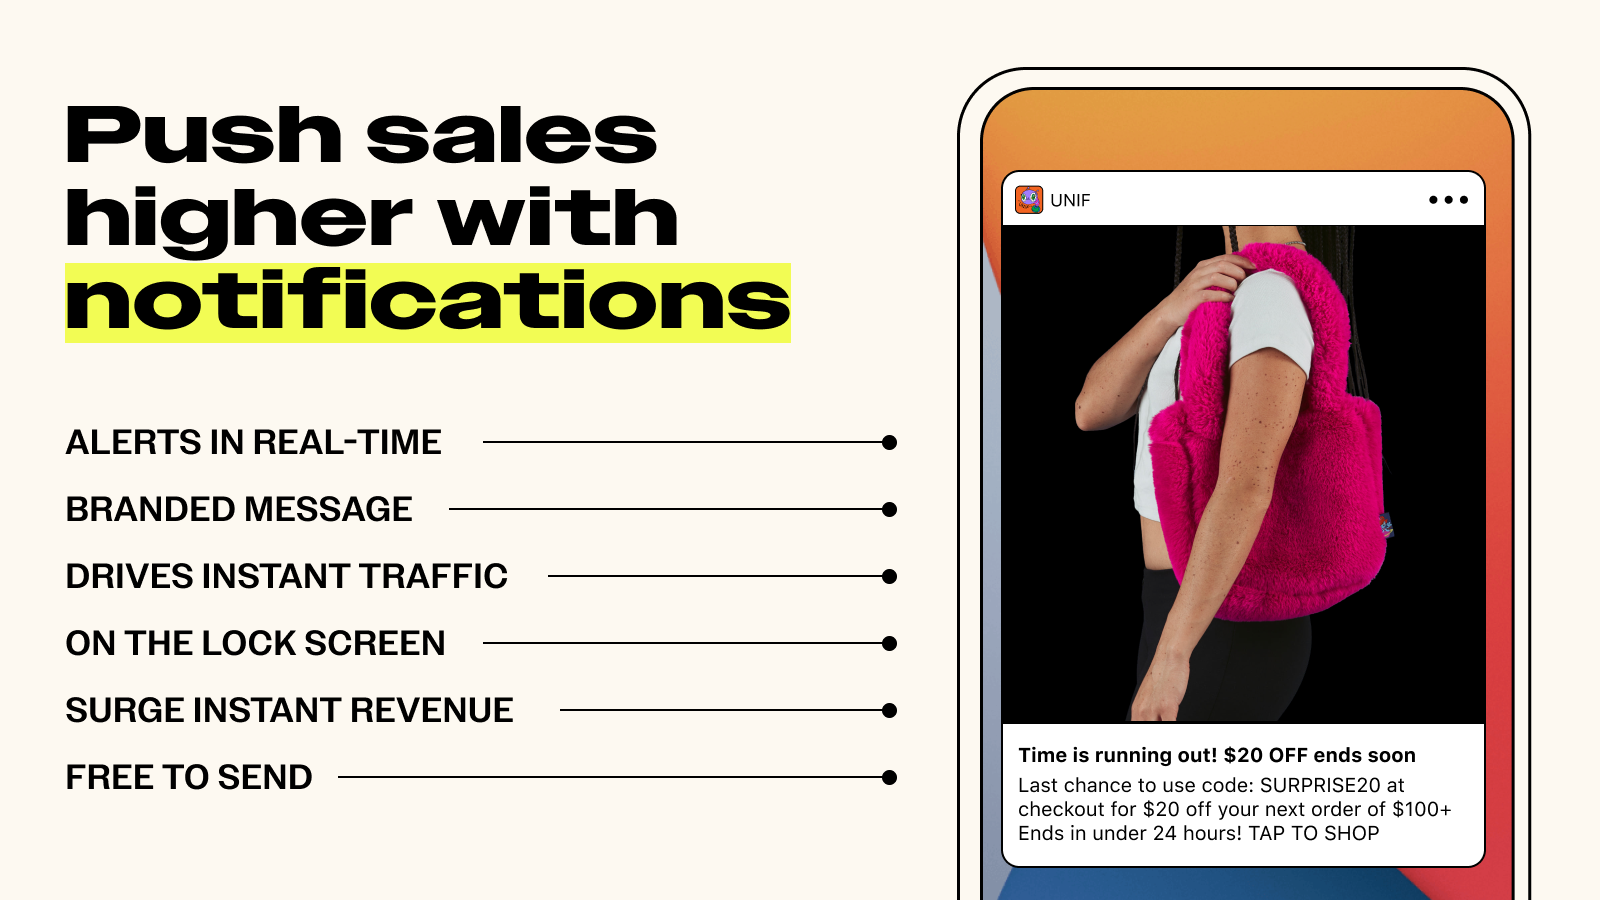 Les notifications push de votre application mobile Shopify stimulent les ventes